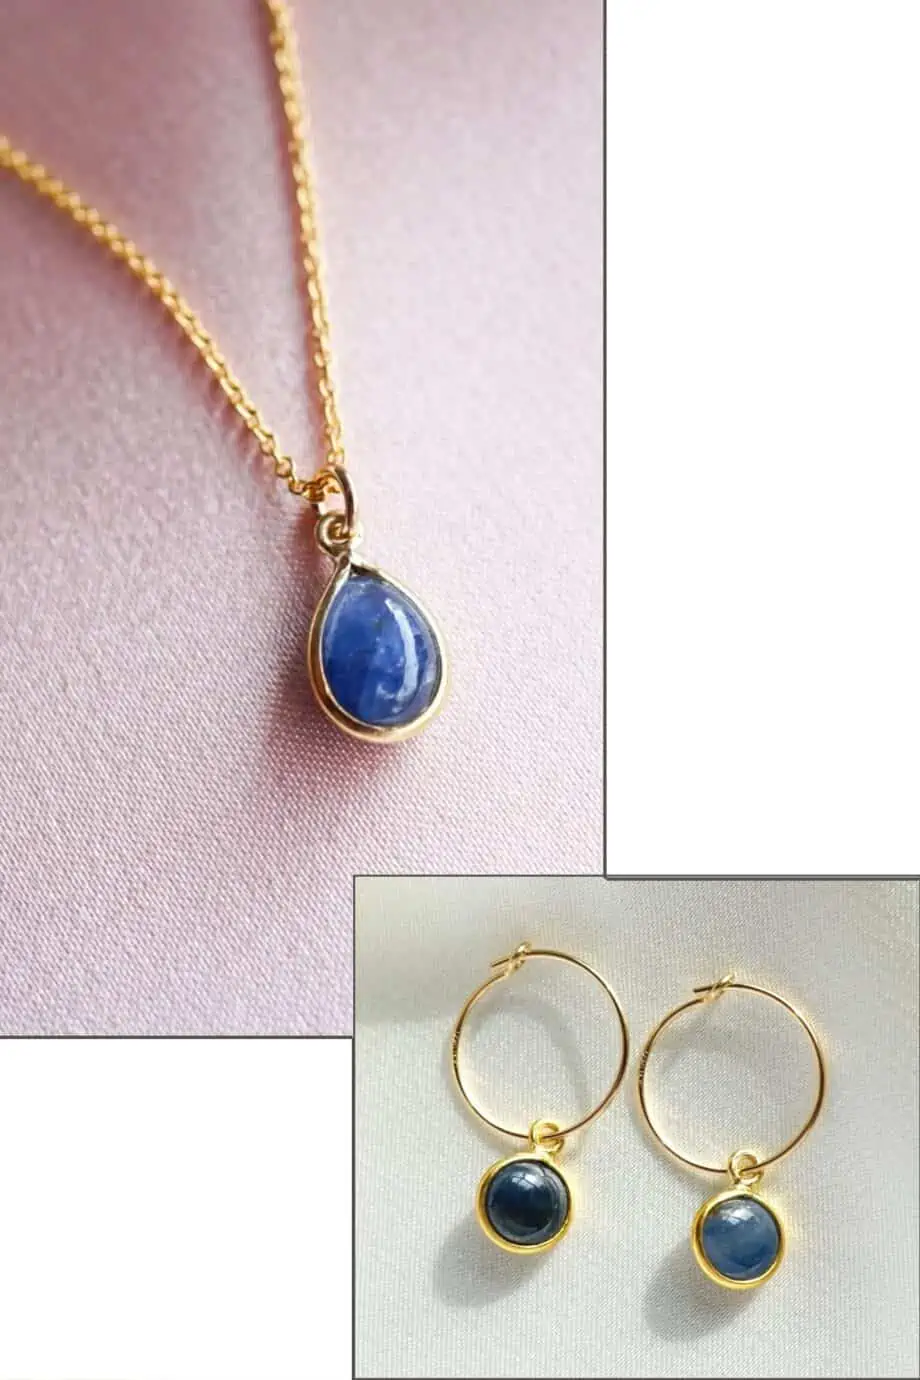 Gouden edelsteen sieraden set van Gold filled Goud en blauwe Saffier edelsteentjes